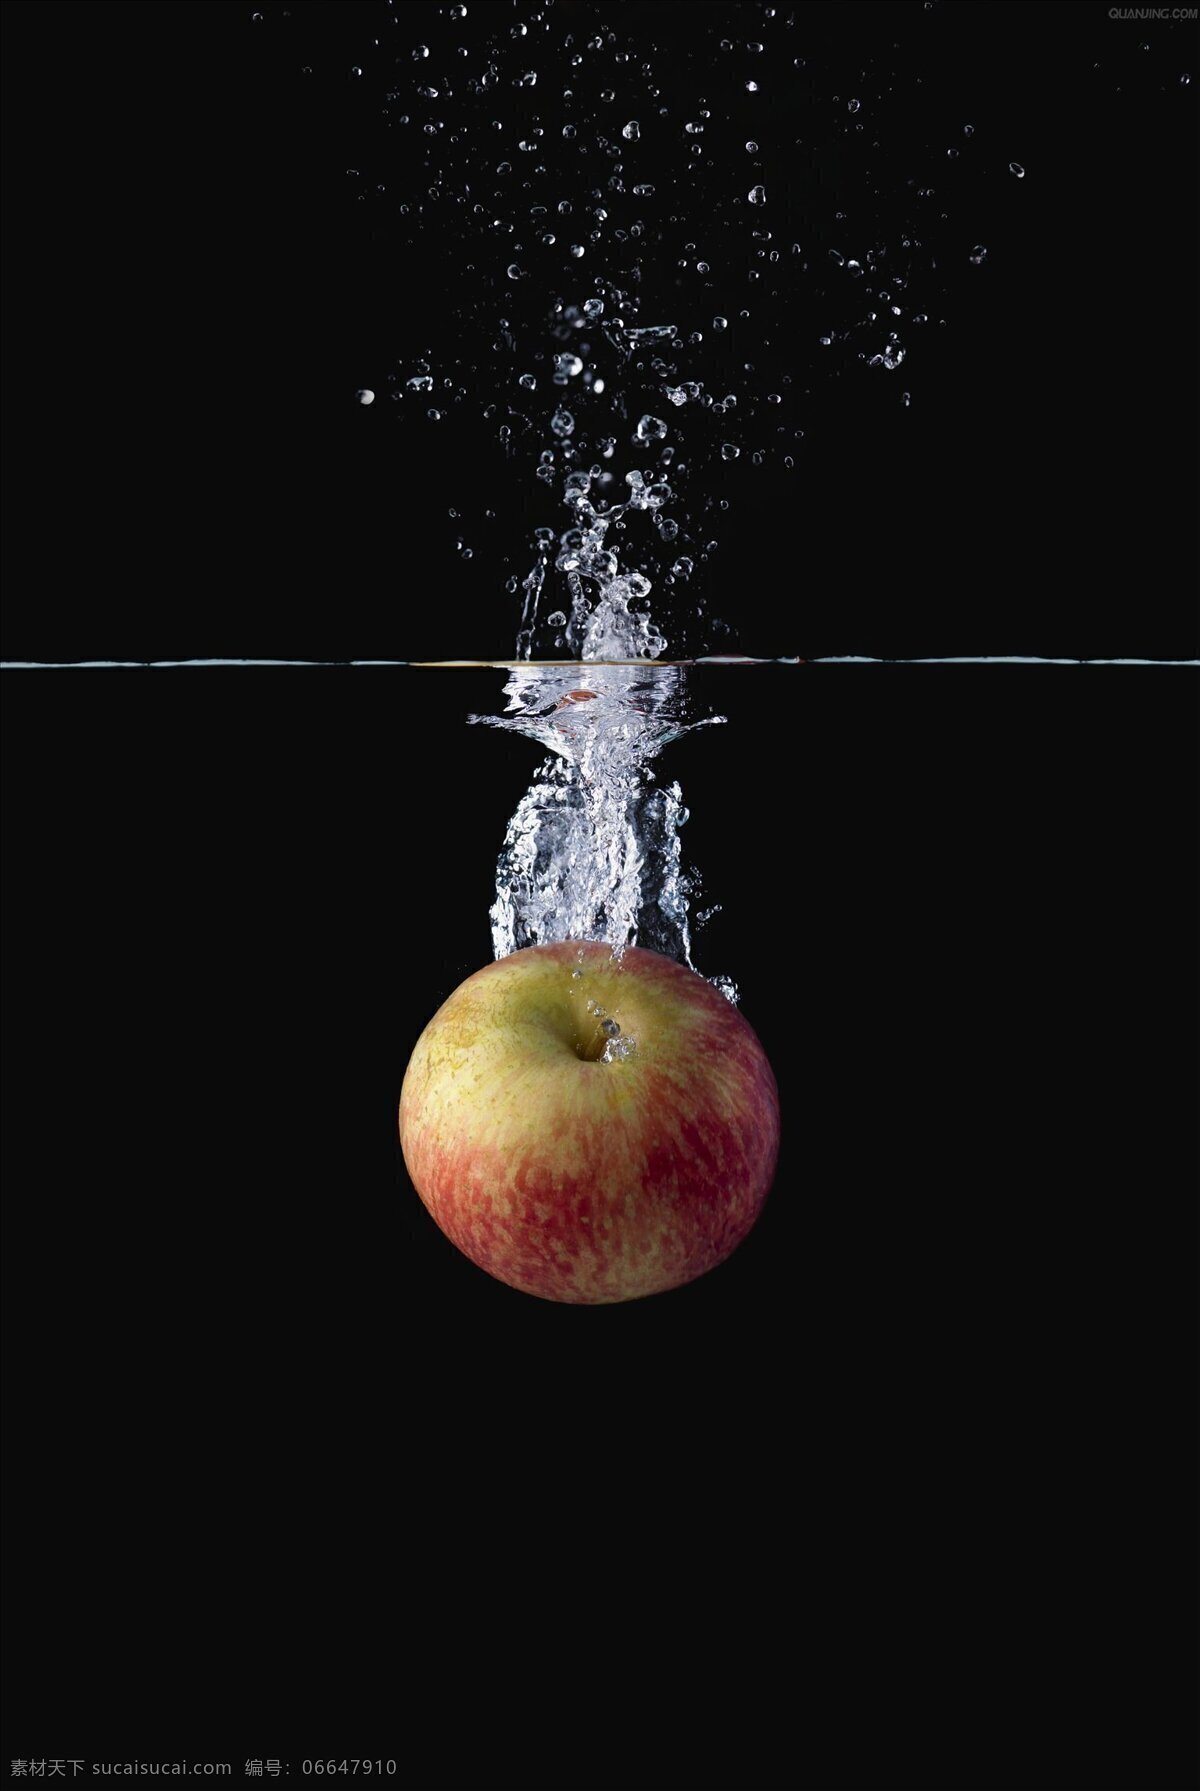 水珠 水面 水 水果 水果落水 水素材 气泡 动态水 水滴 水气泡 水泡 水花 水花溅起 生活百科 生活素材